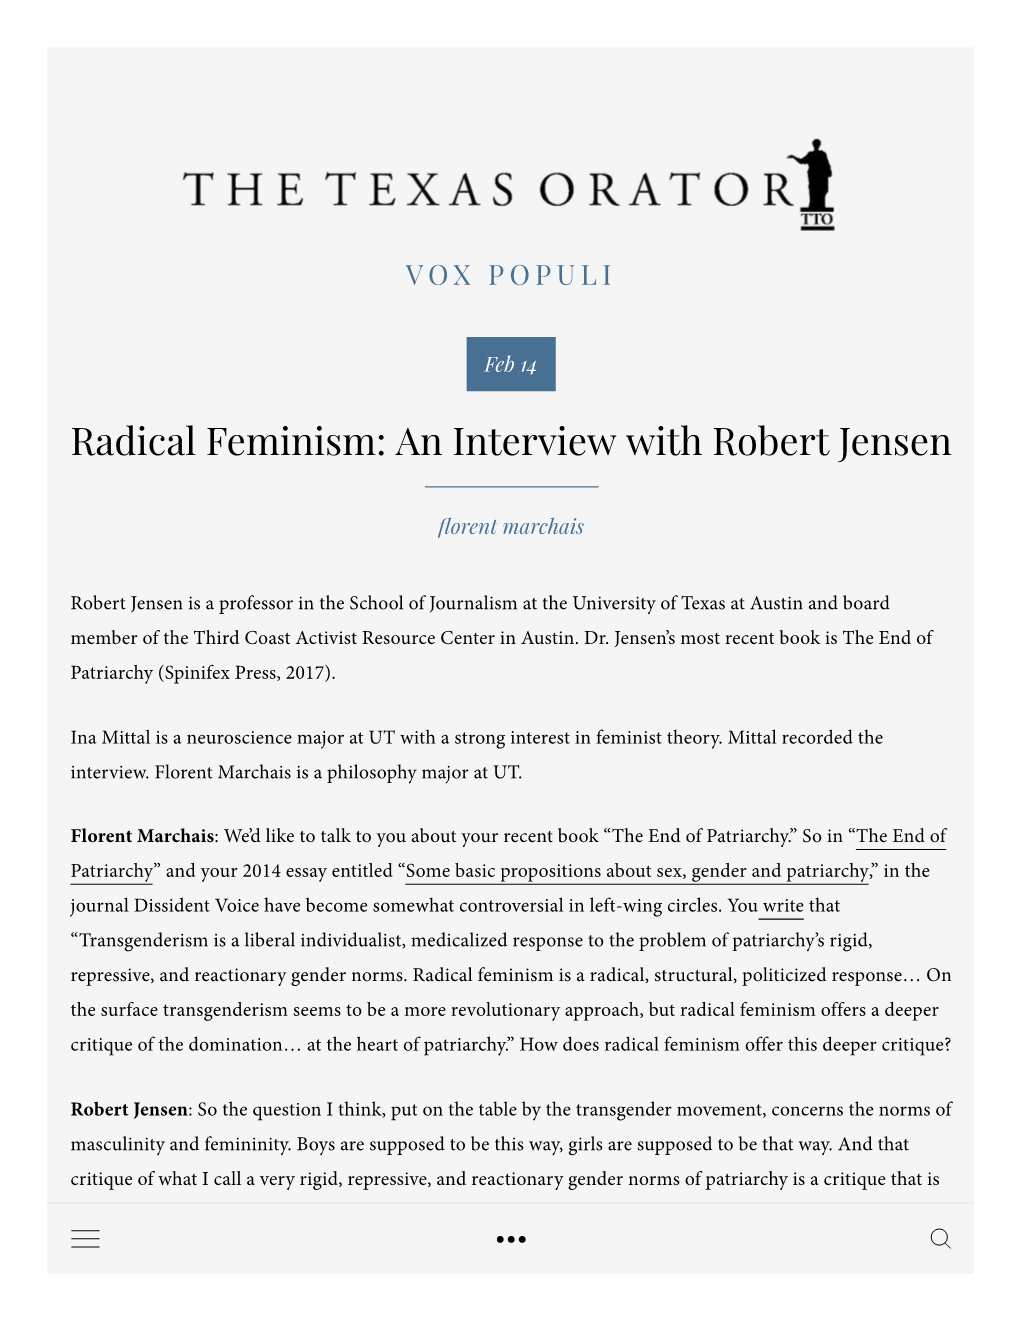 Radical Feminism: an Interview with Robert Jensen